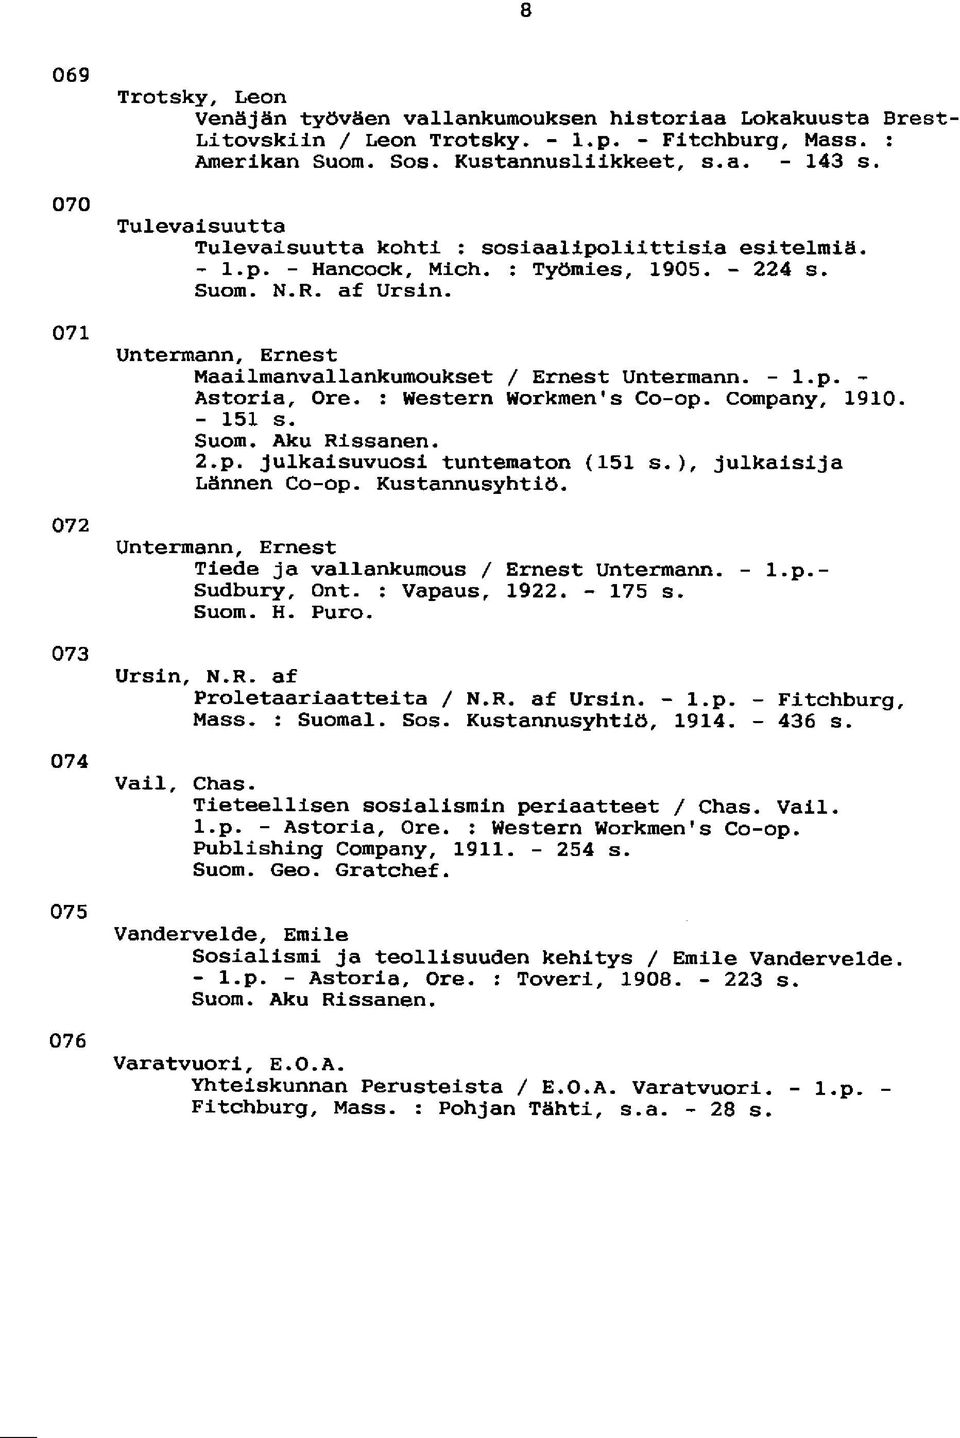 Untermann, Ernest Maailmanvallankumoukset / Ernest Untermann. - l.p. - Astoria, Ore. : Western Workmen's Co-op. Company, 1910. - 151 s. Suom. Aku Rissanen. 2.p. julkaisuvuosi tuntematon (151 s.